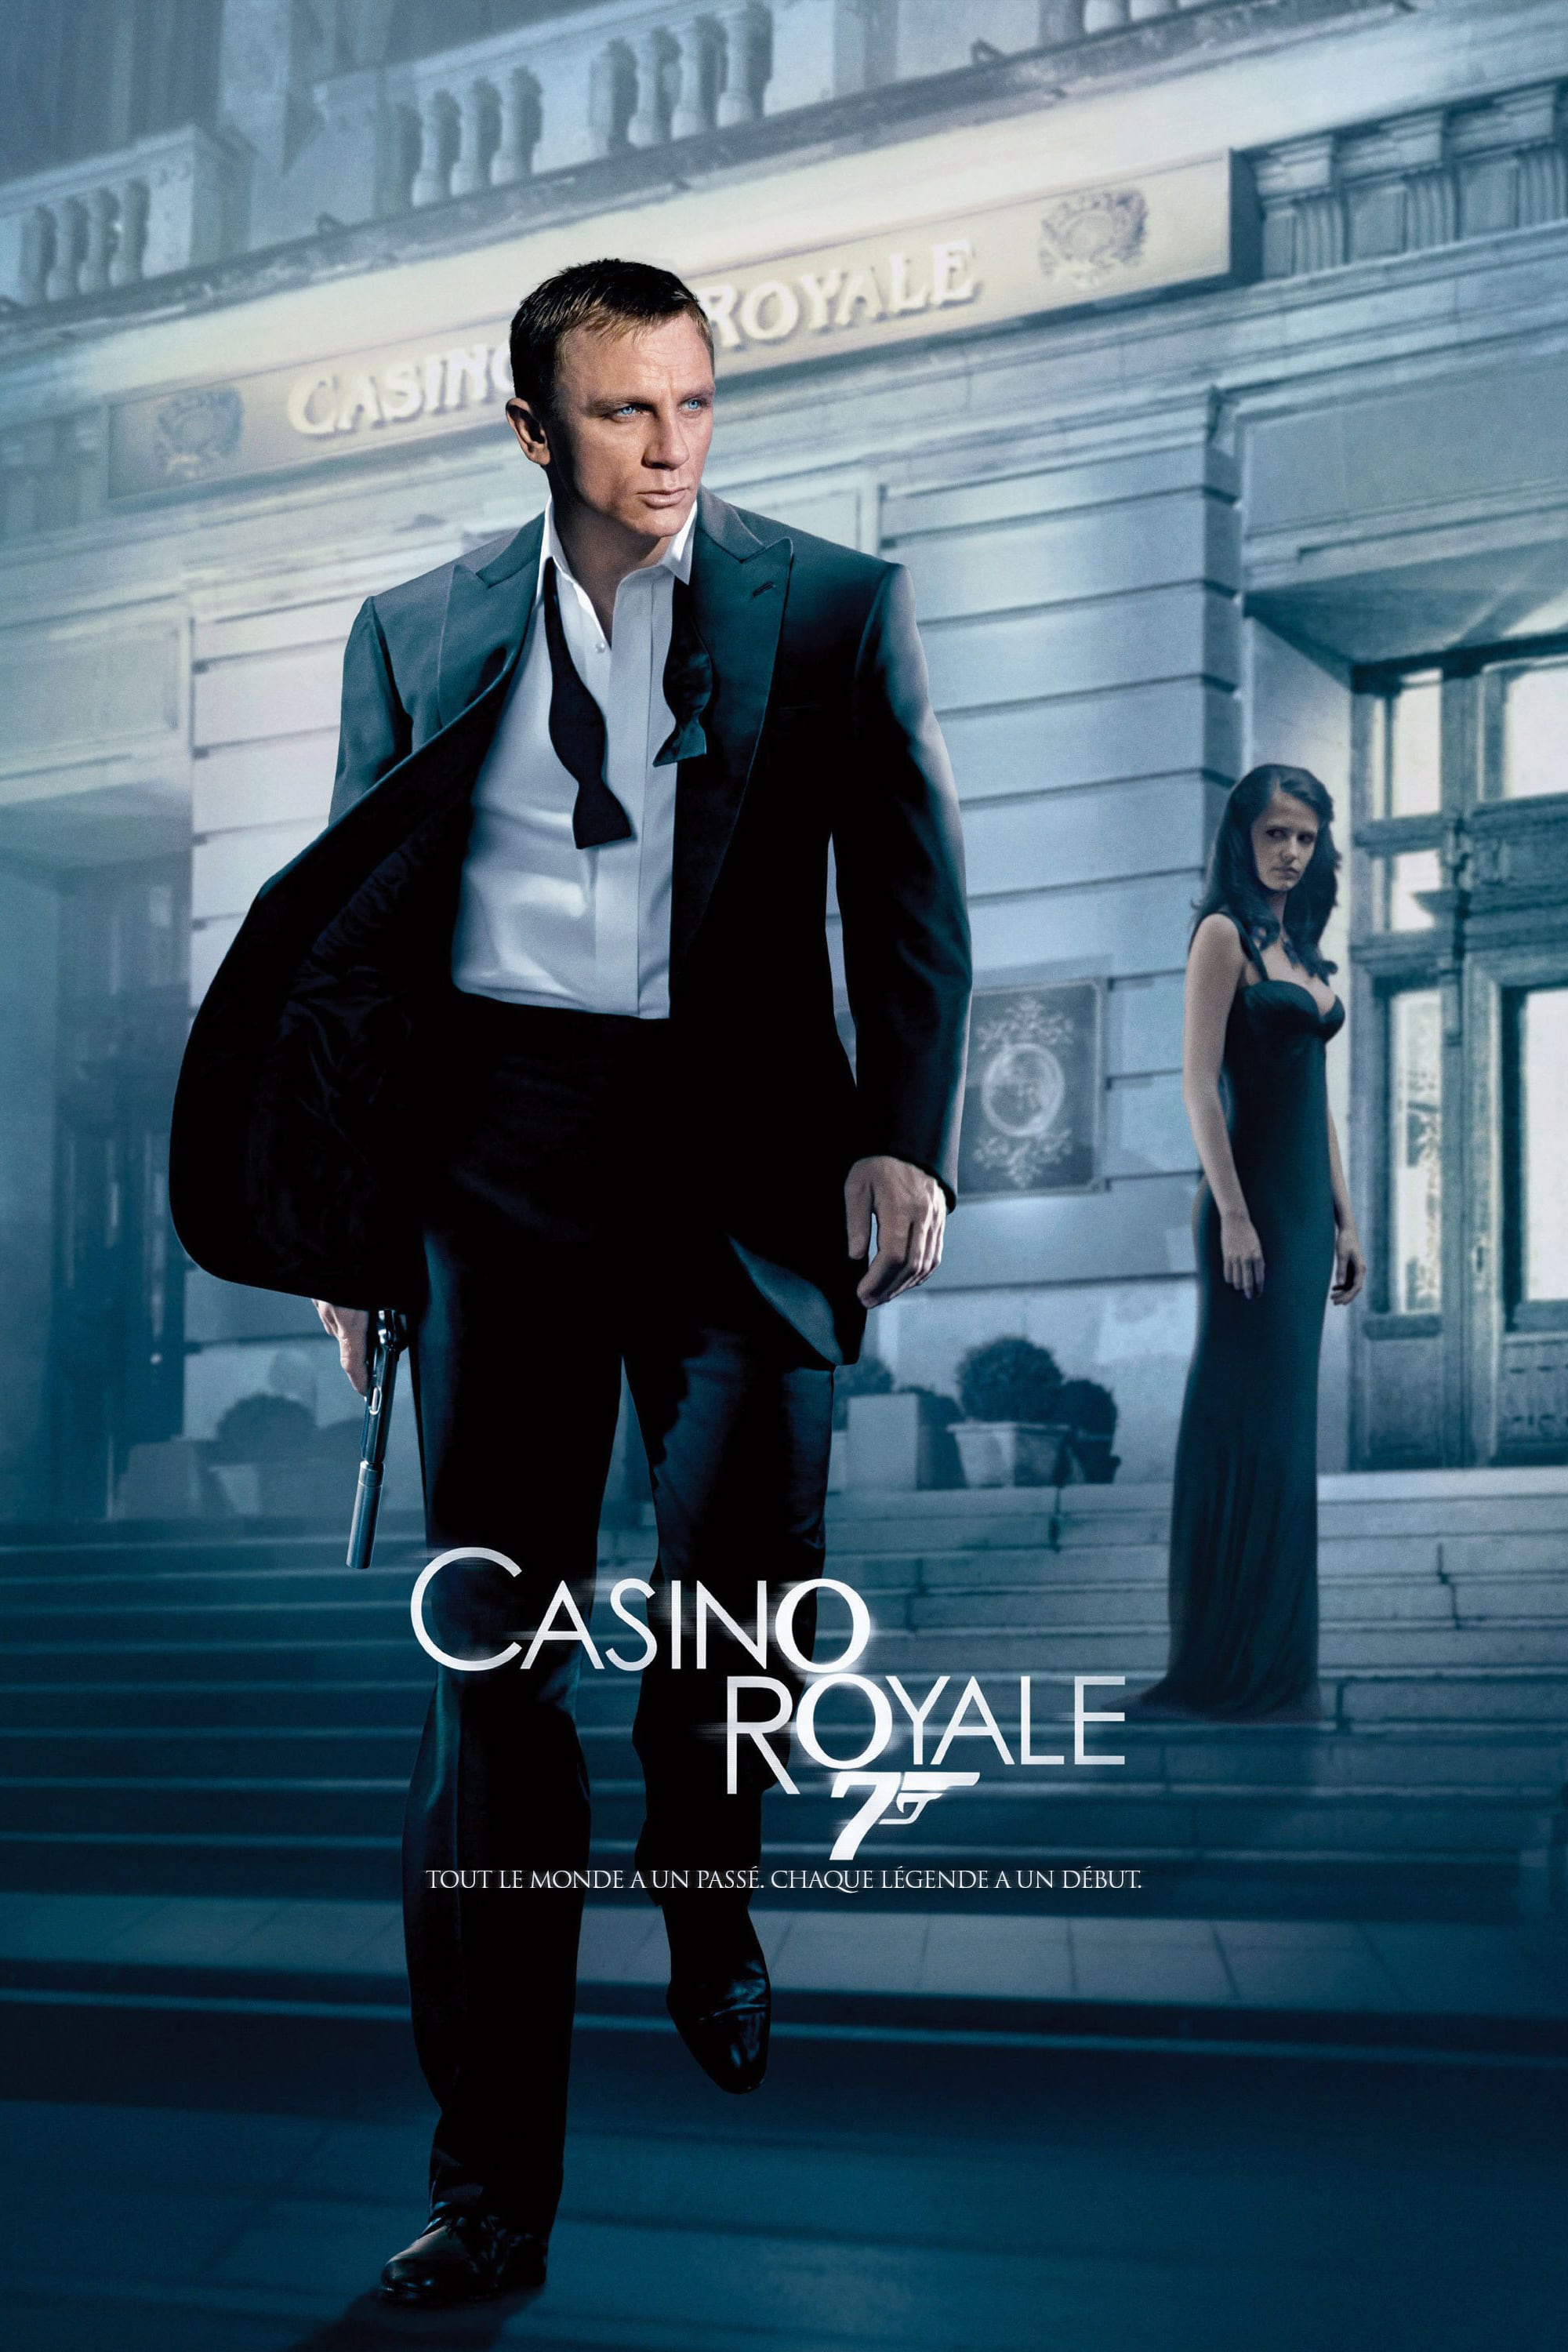 Affiche du film "Casino Royale"